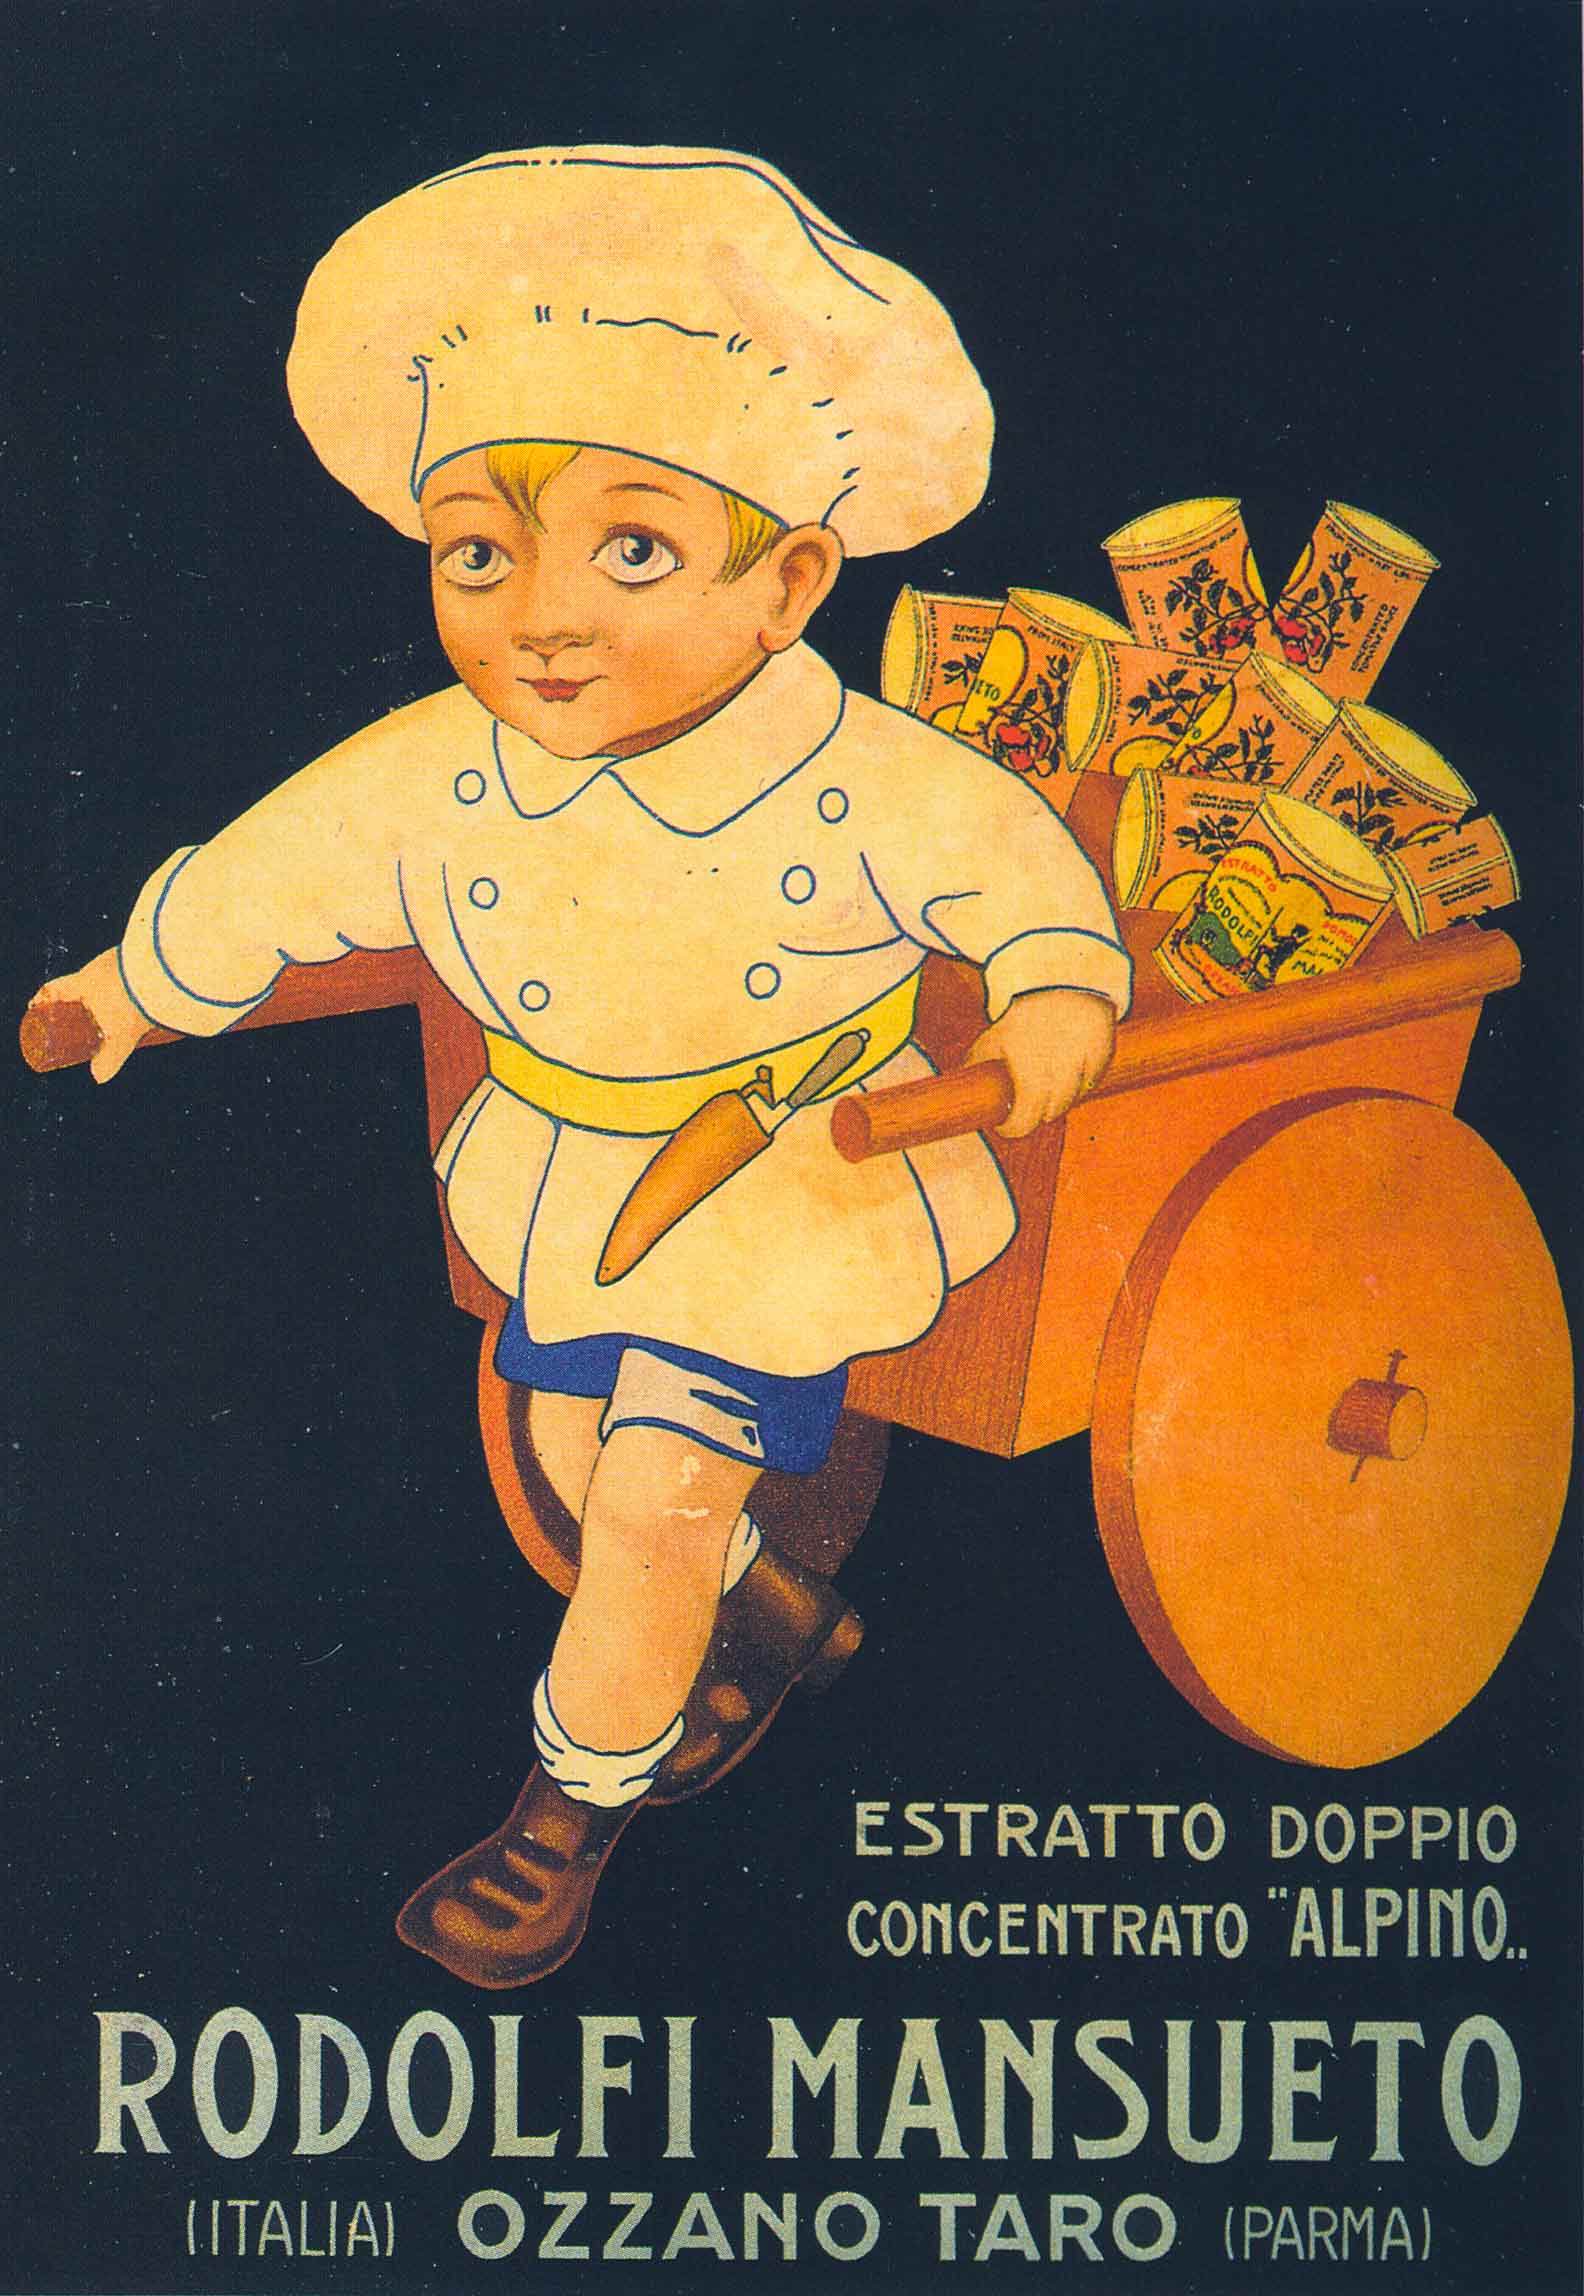 Locandina pubblicitaria per il doppio concentrato di pomodoro marca “Alpino” degli anni Venti del Novecento